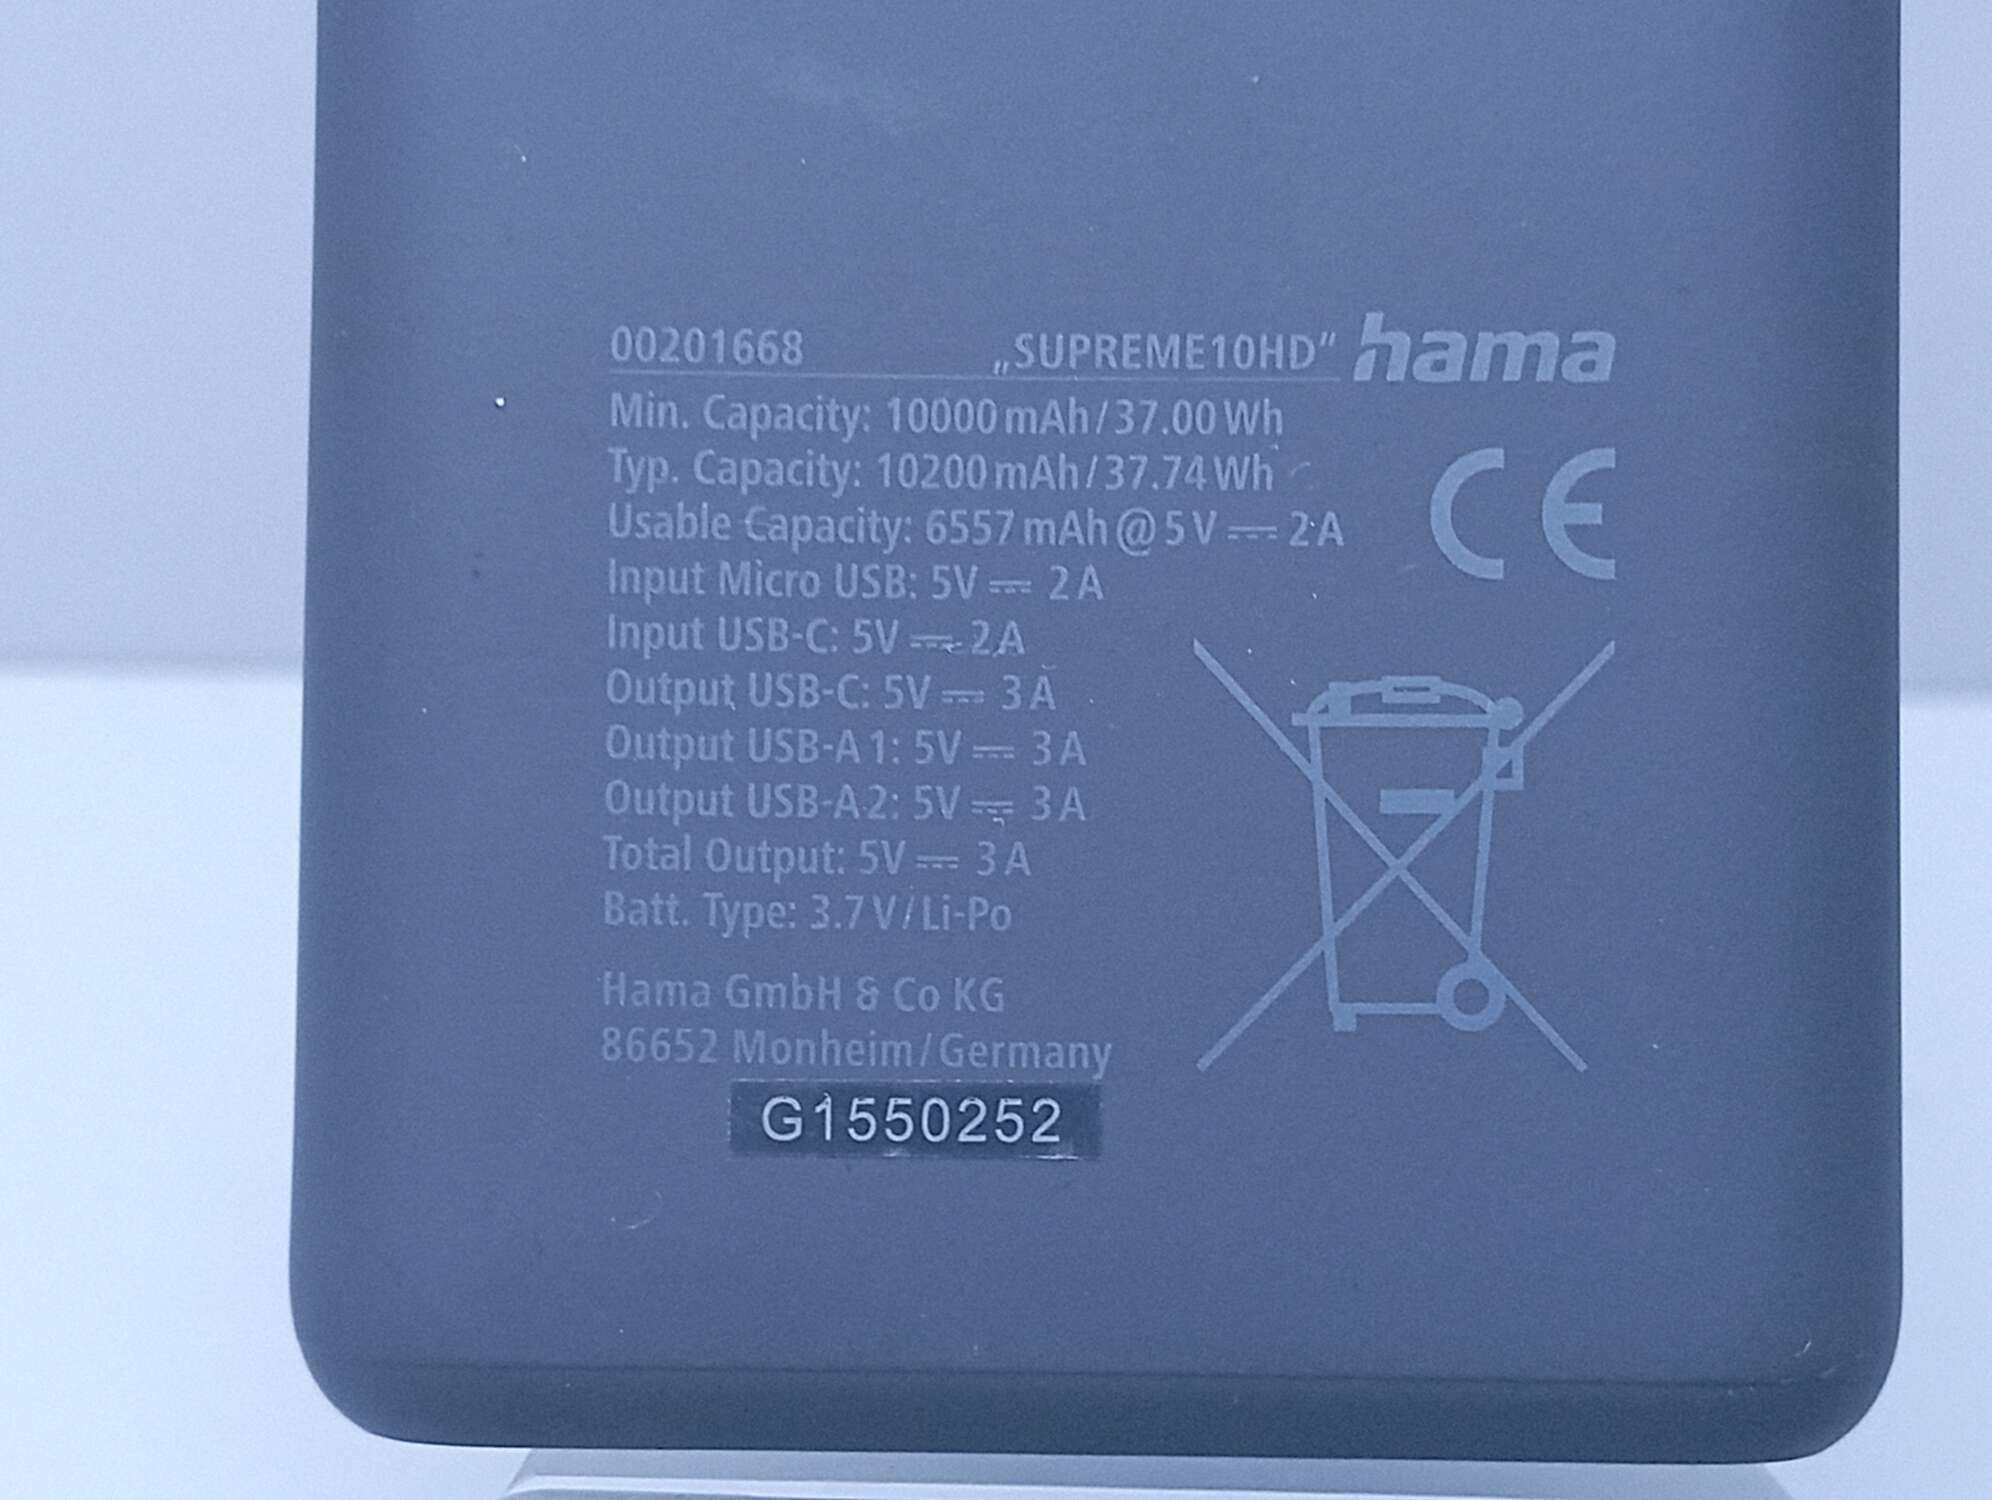 Powerbank Hama Supreme 10HD 10000 mAh 1